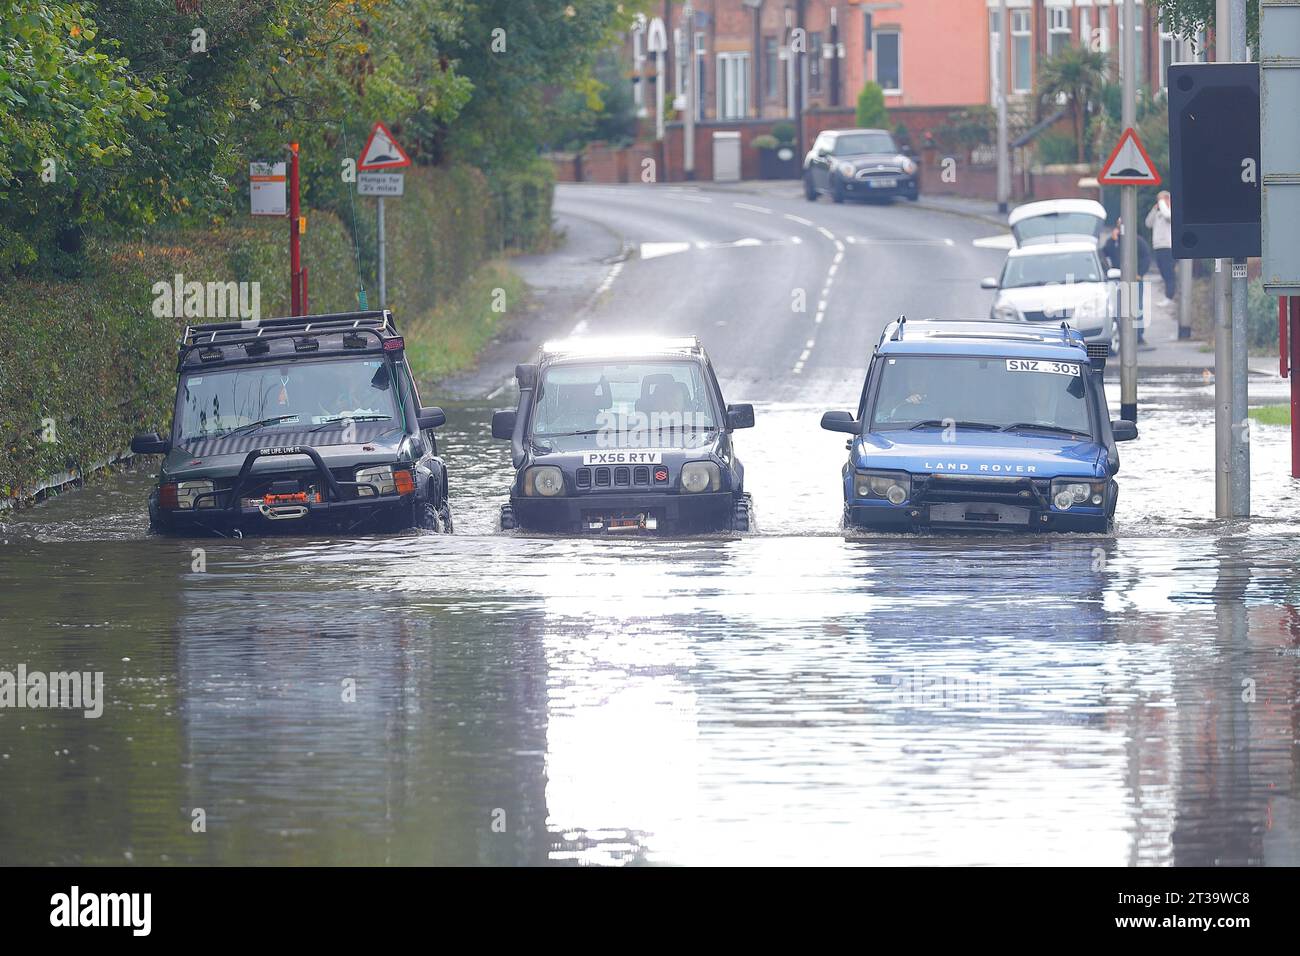 21 octobre tempête Babet inondant Station Road à Allerton Bywater, West Yorkshire, Royaume-Uni Banque D'Images